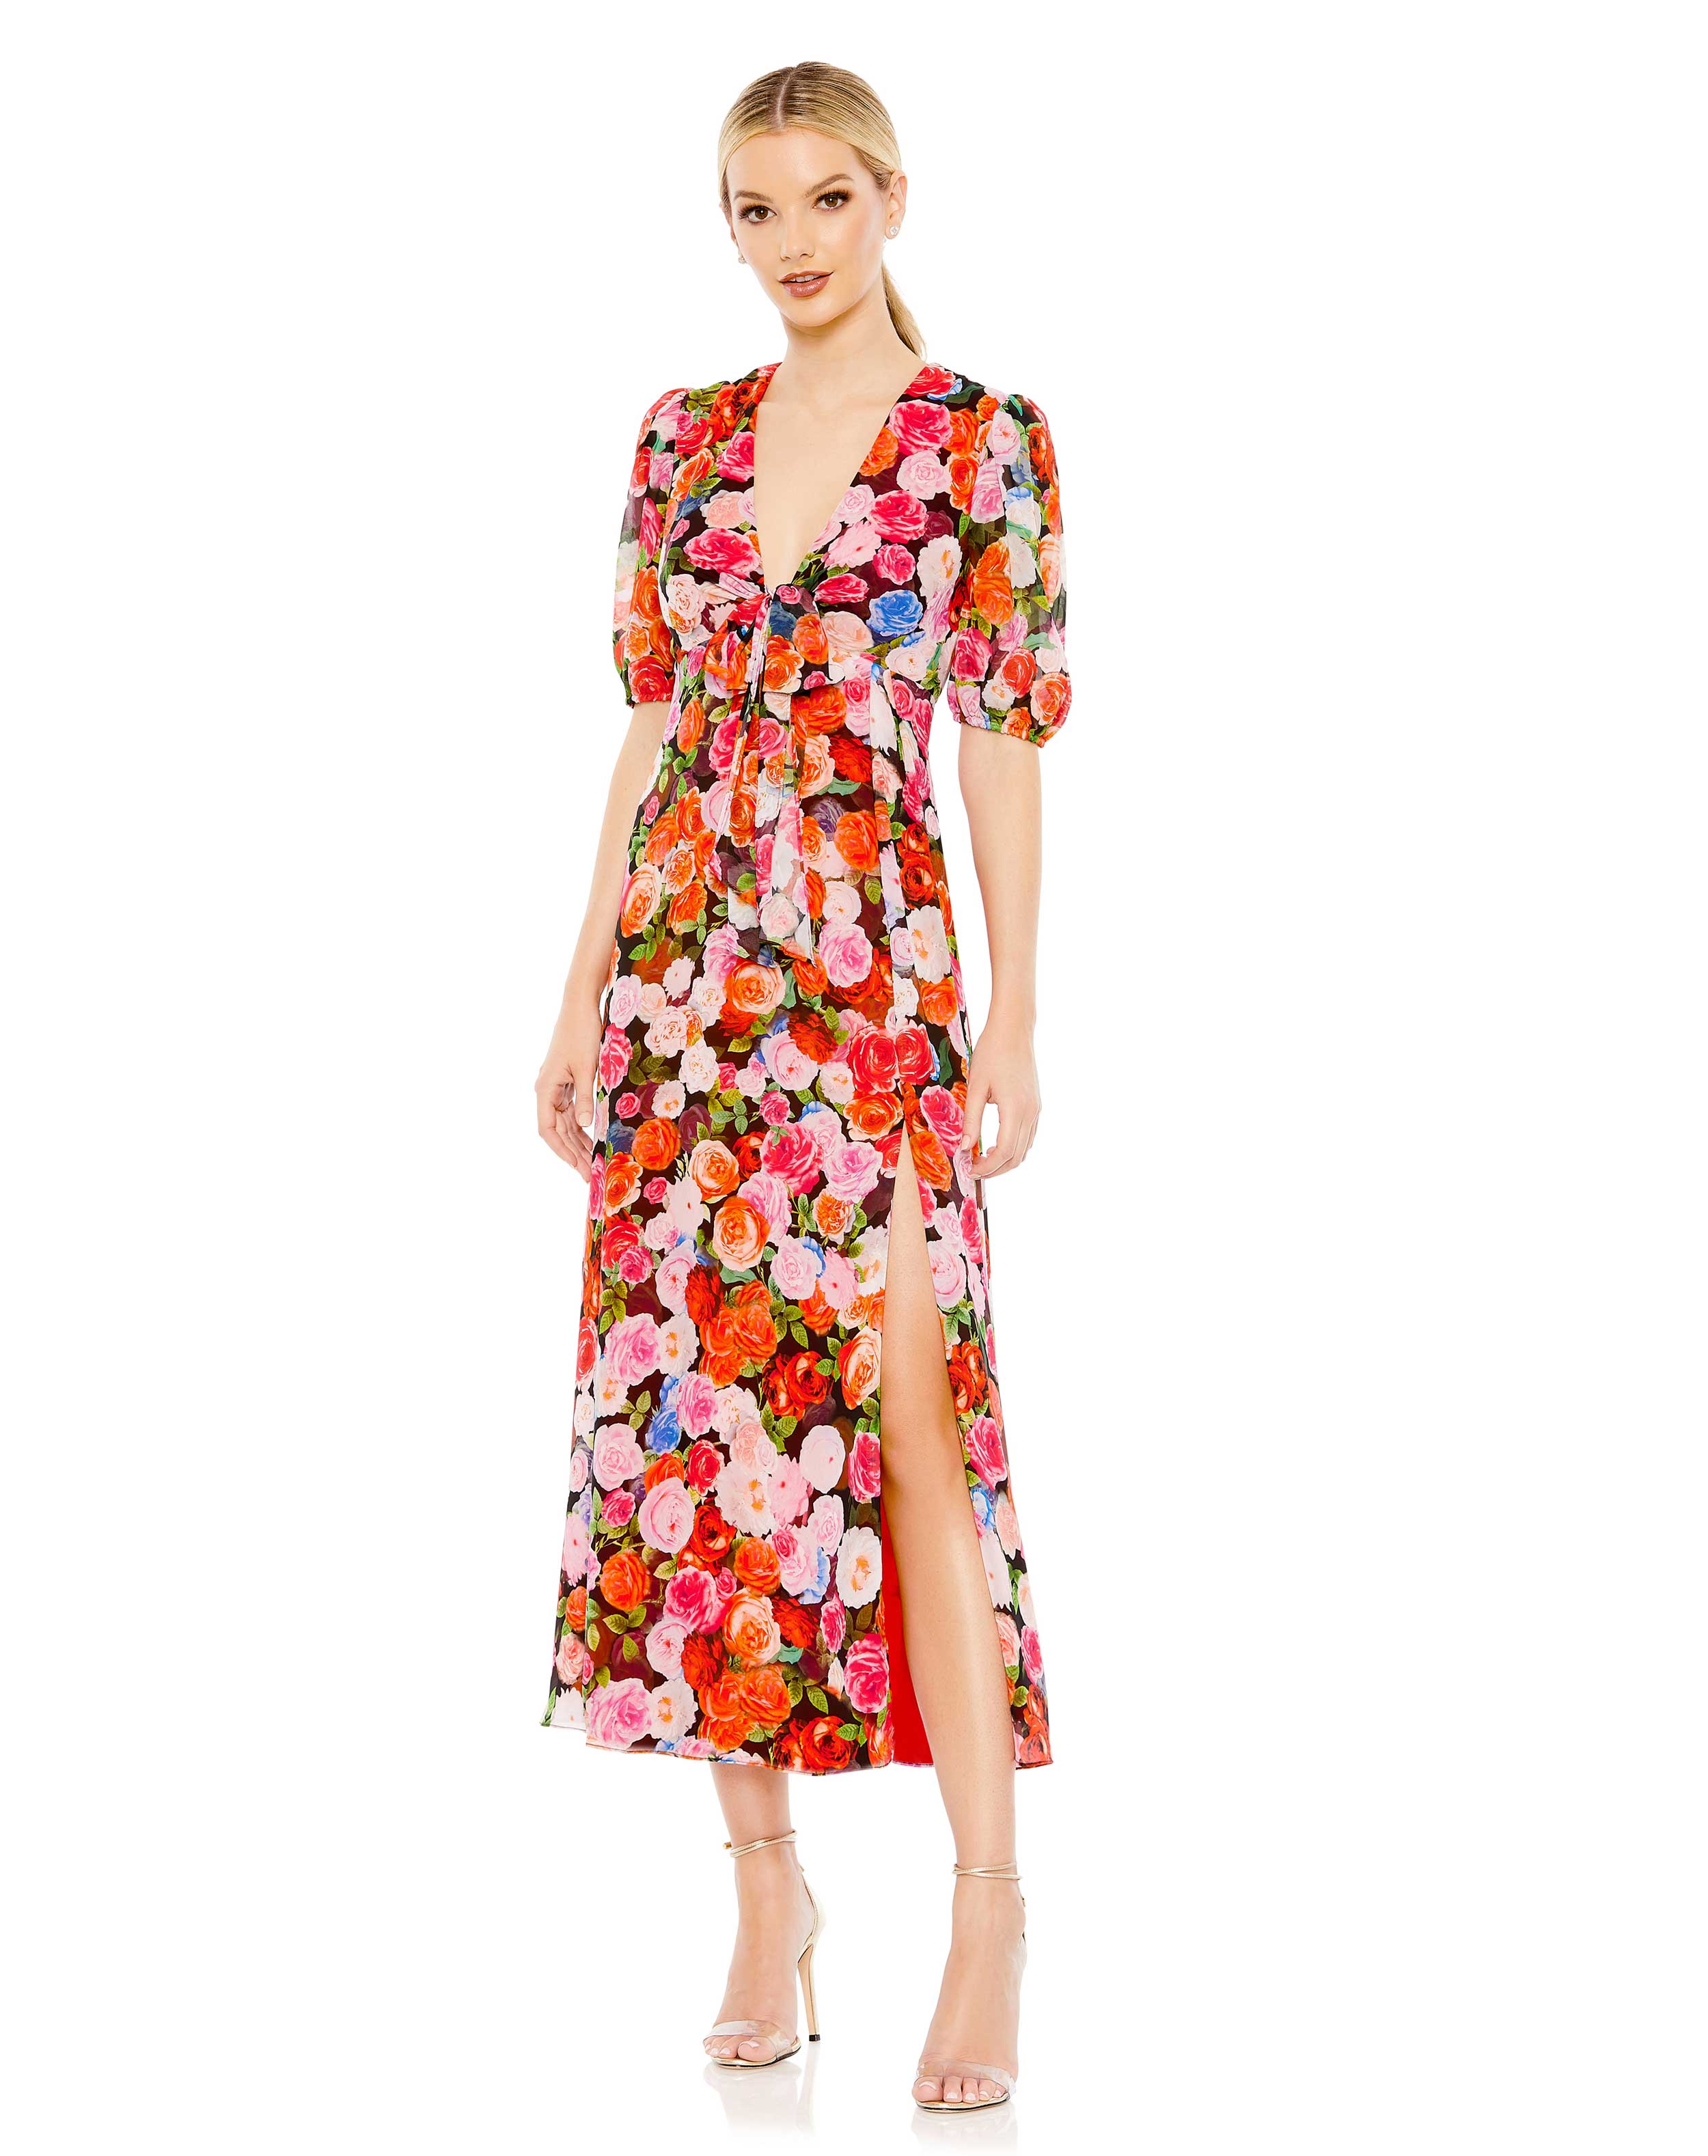 Floral Print Chiffon Puff Sleeve Tiered Hem Dress – Mac Duggal